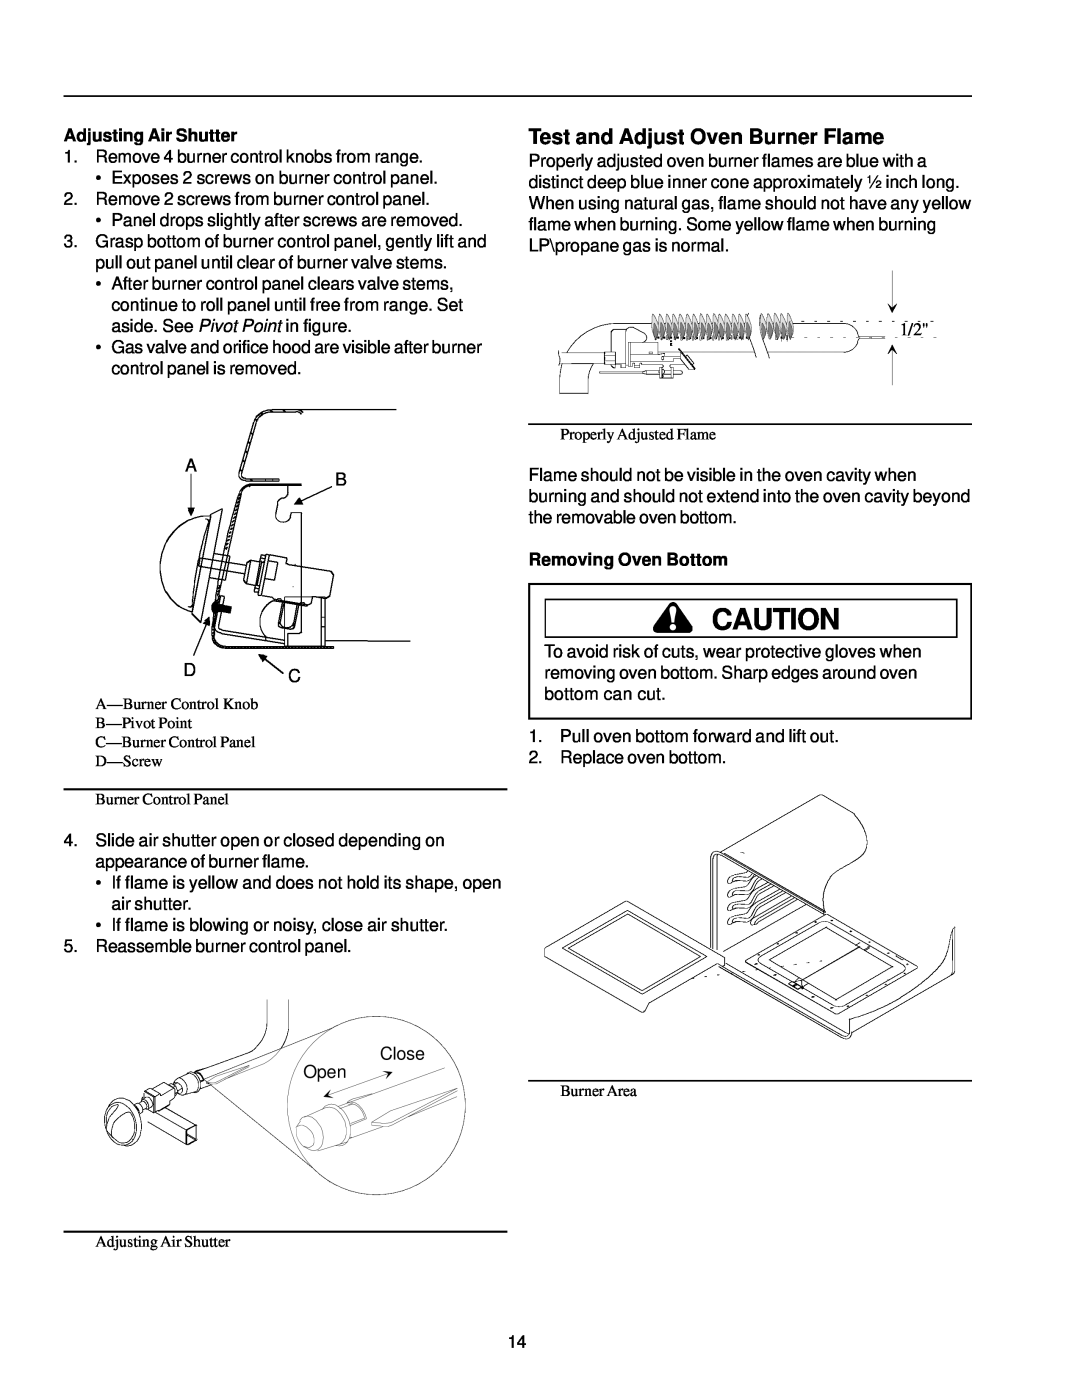 Amana ARG7302 manual Test and Adjust Oven Burner Flame, Adjusting Air Shutter, Removing Oven Bottom 